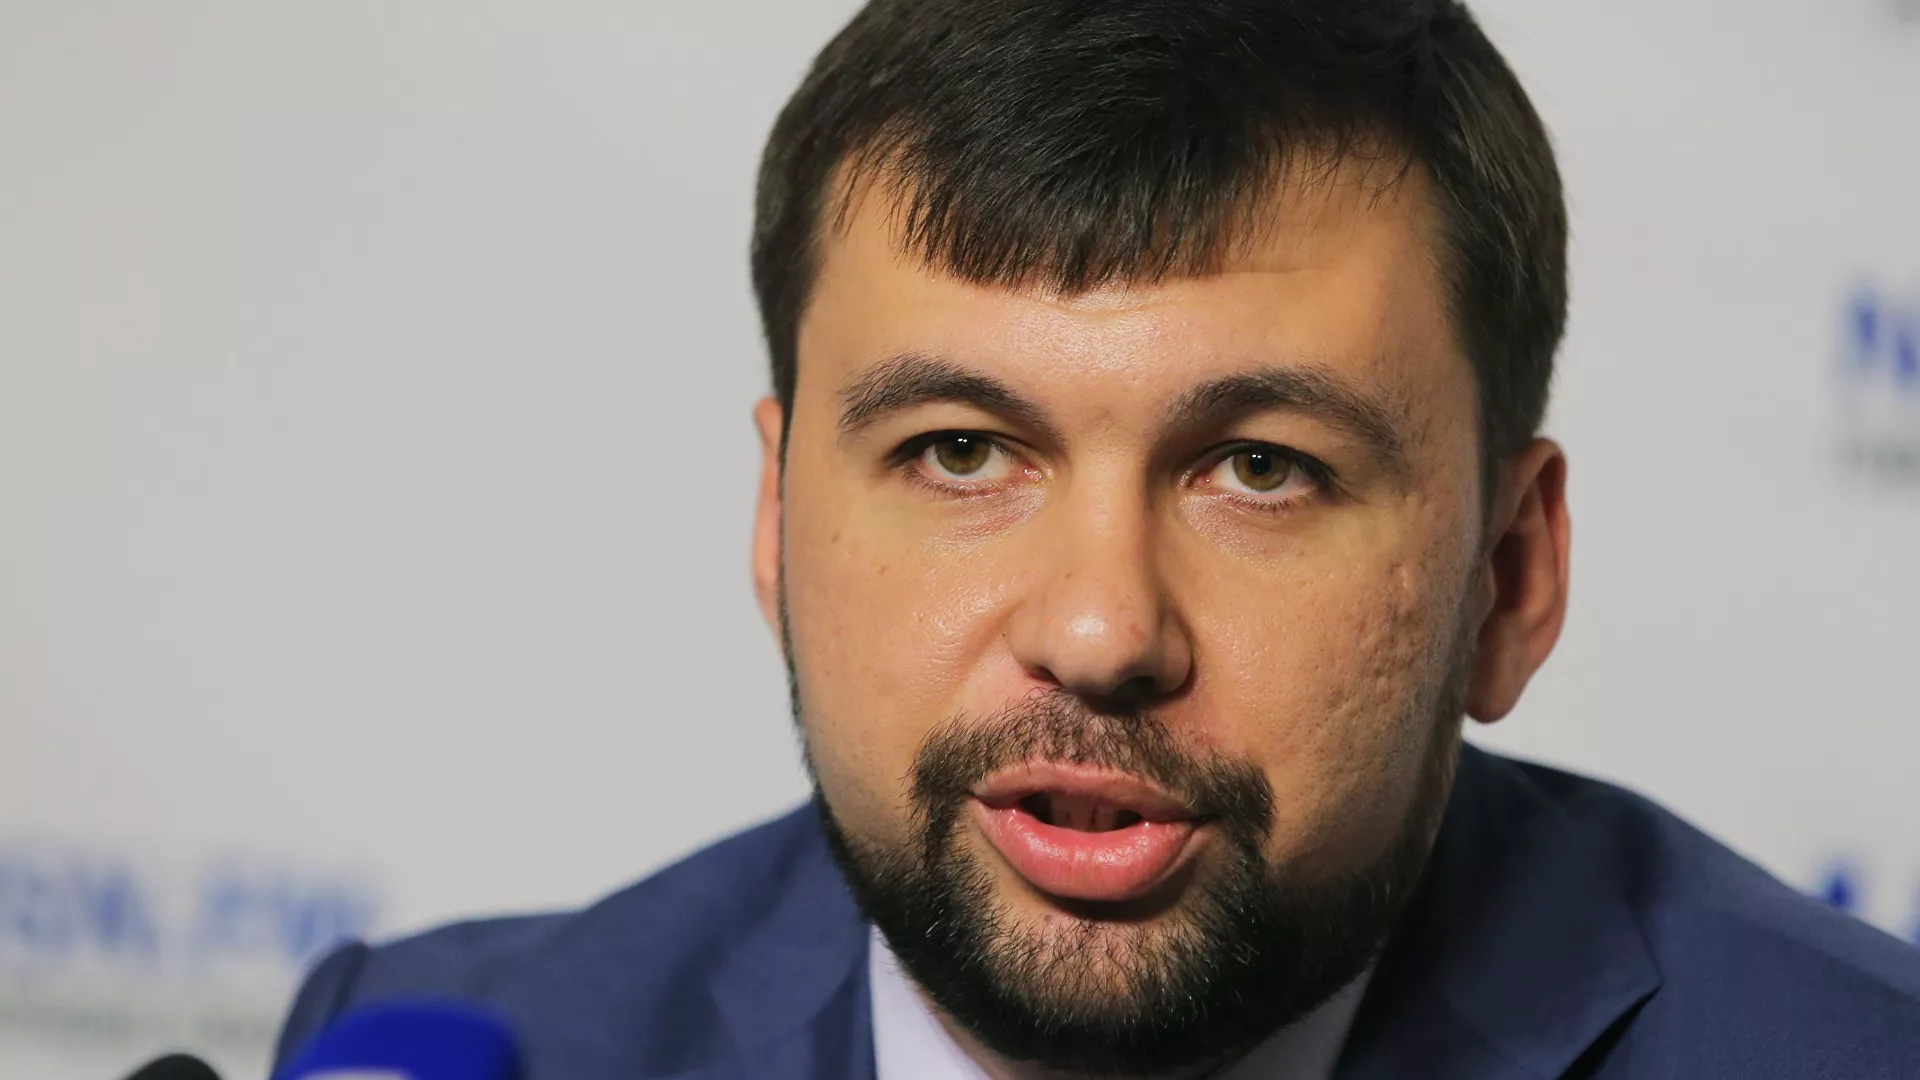  Líder de la República Popular de Donetsk (RPD), Denís Pushilin, informa de 200 personas atrapadas bajo los escombros tras una explosión en Mariúpol